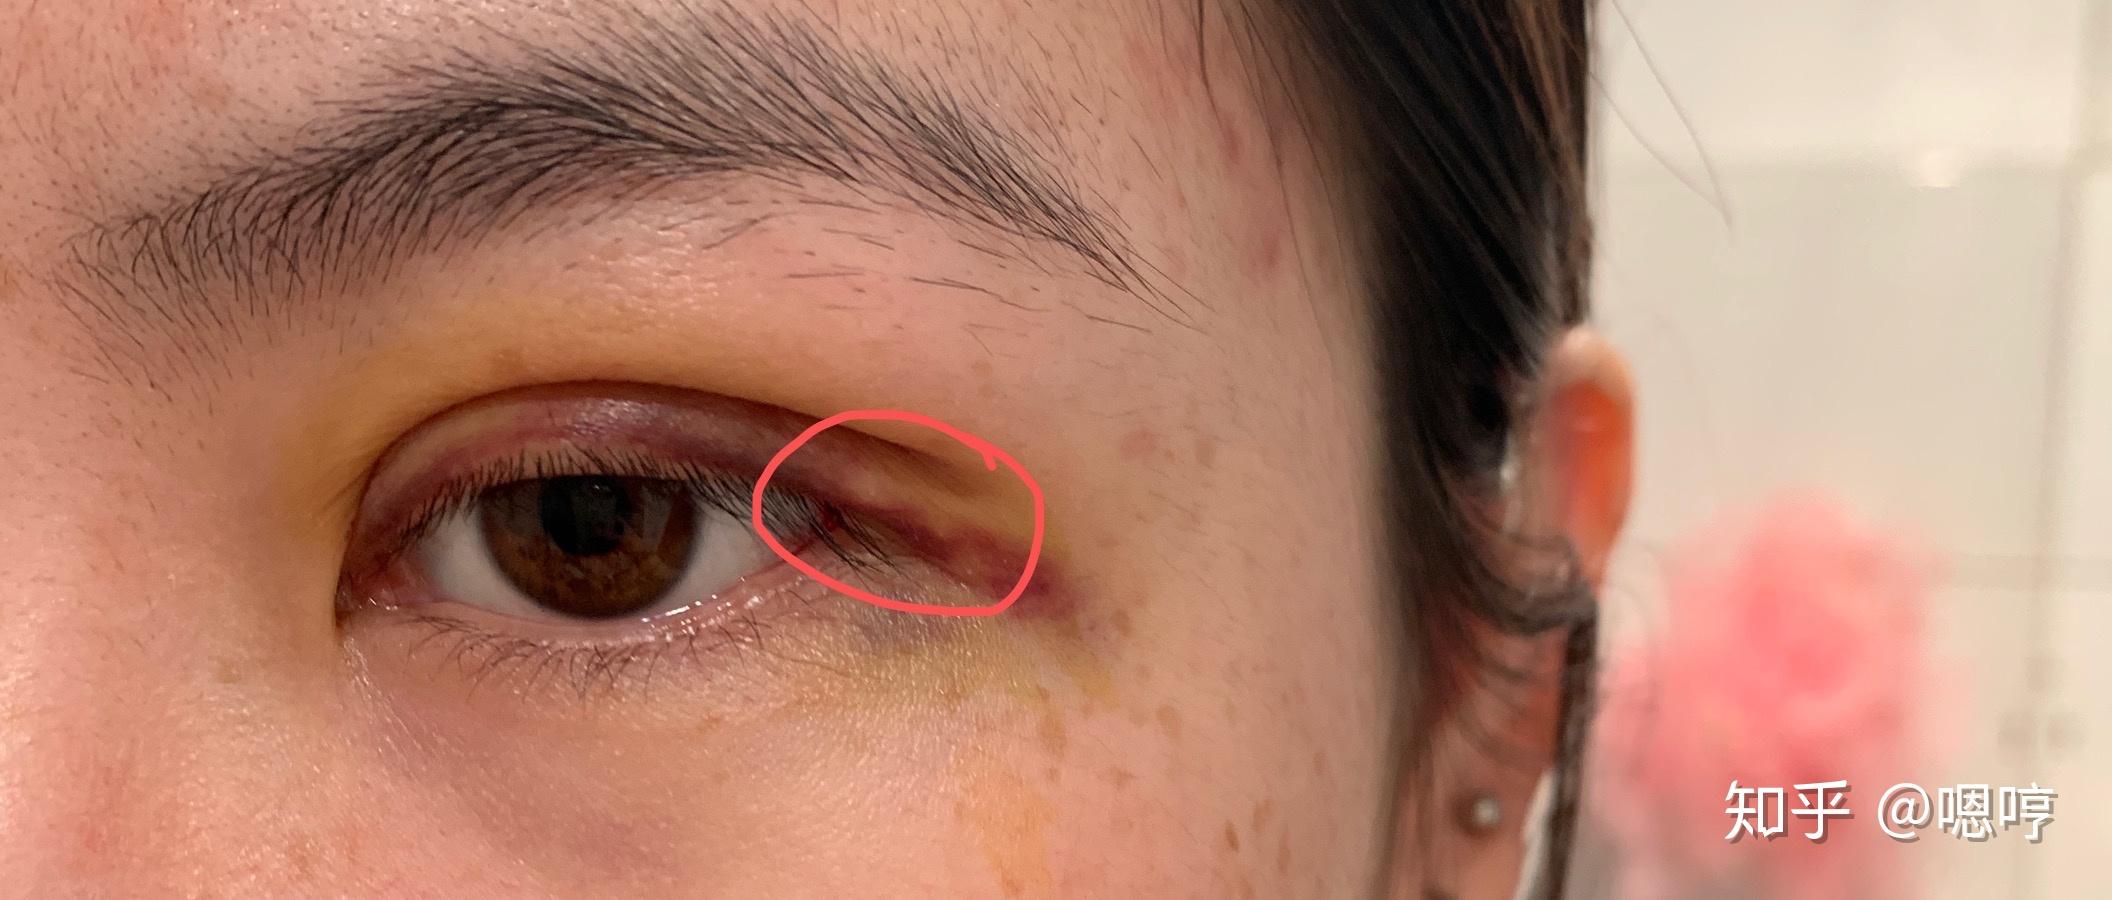 眼睛周围长汗管瘤是什么原因造成的？ - 知乎